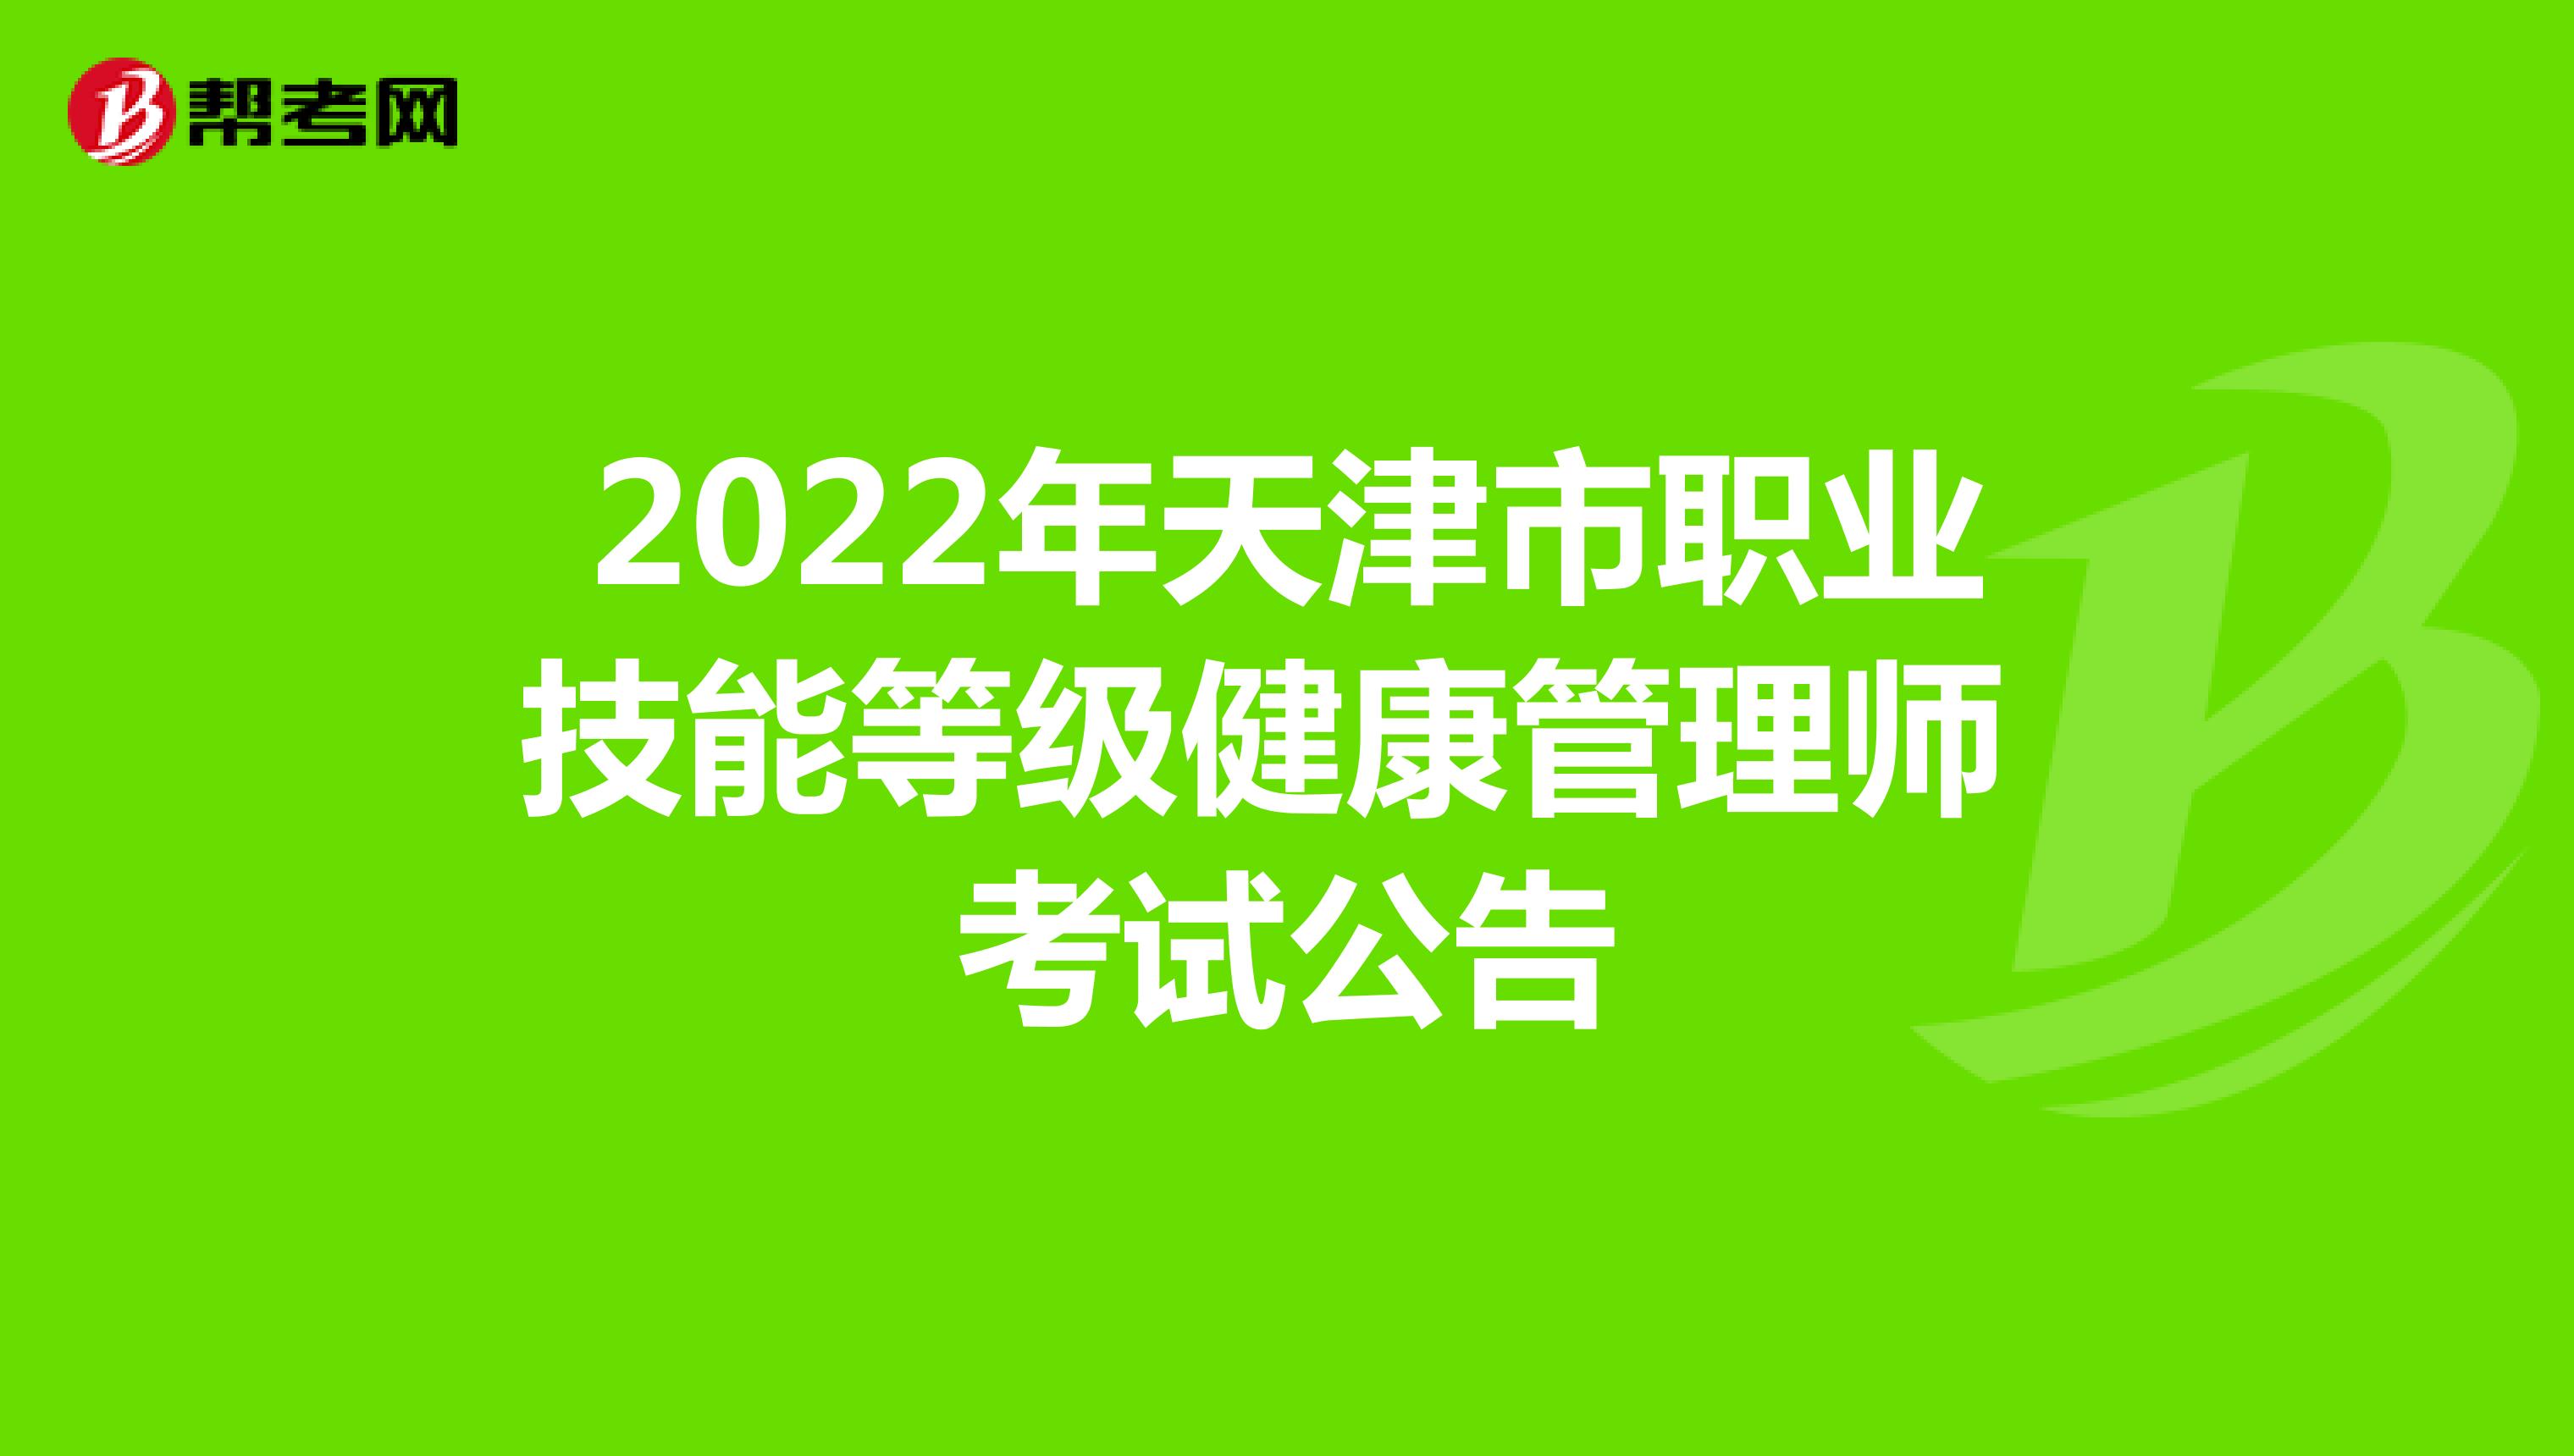 2022年天津市职业技能等级健康管理师考试公告